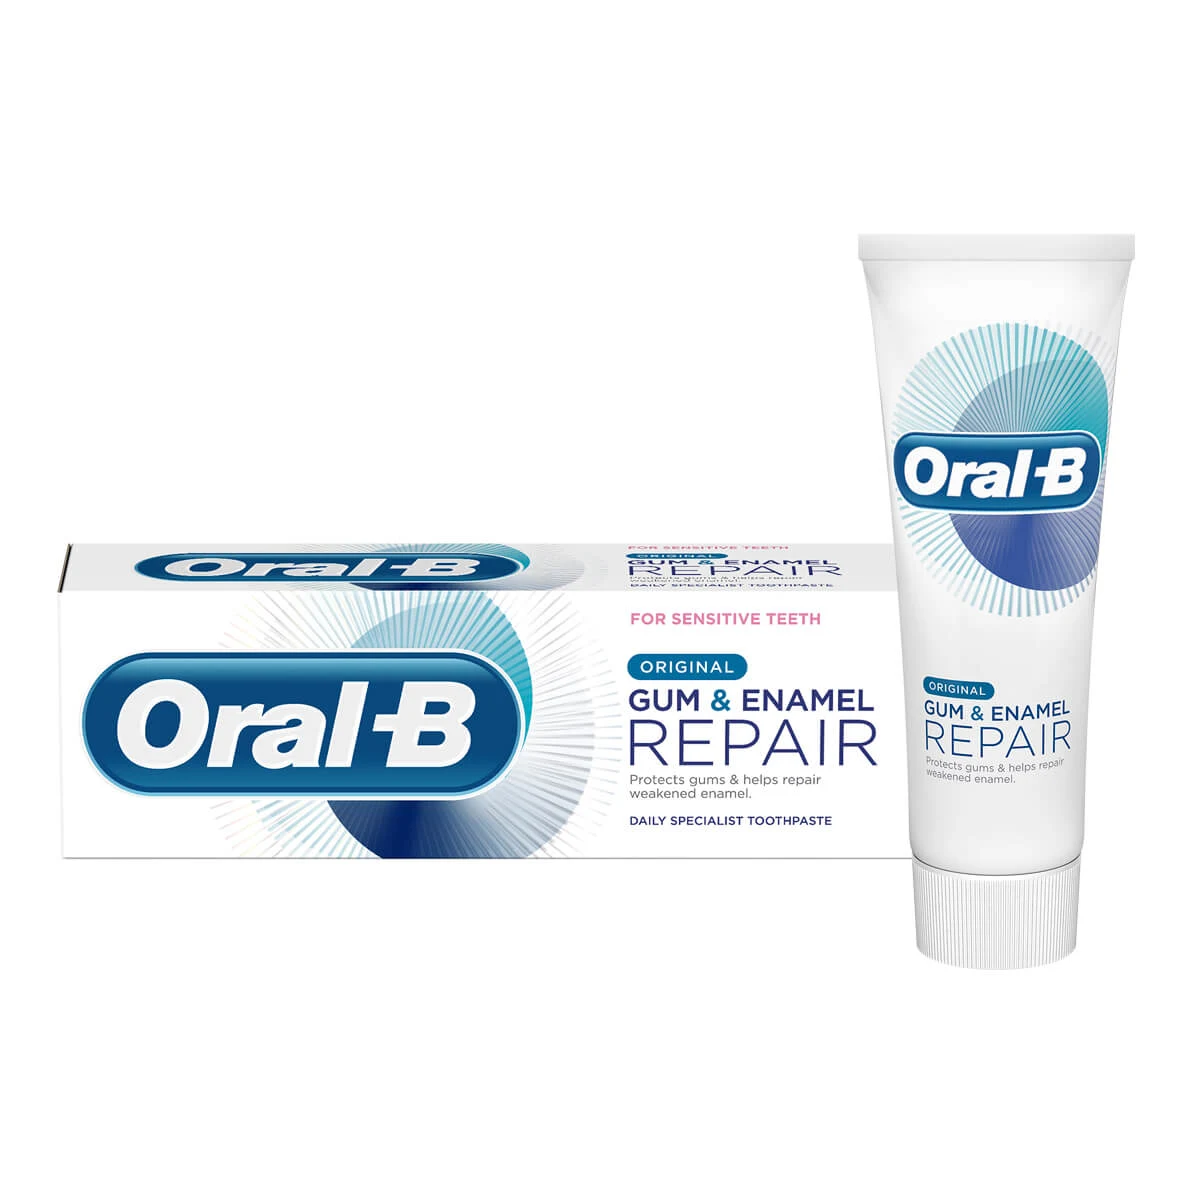 Oral-B Gum & Enamel Repair Original Toothpaste 